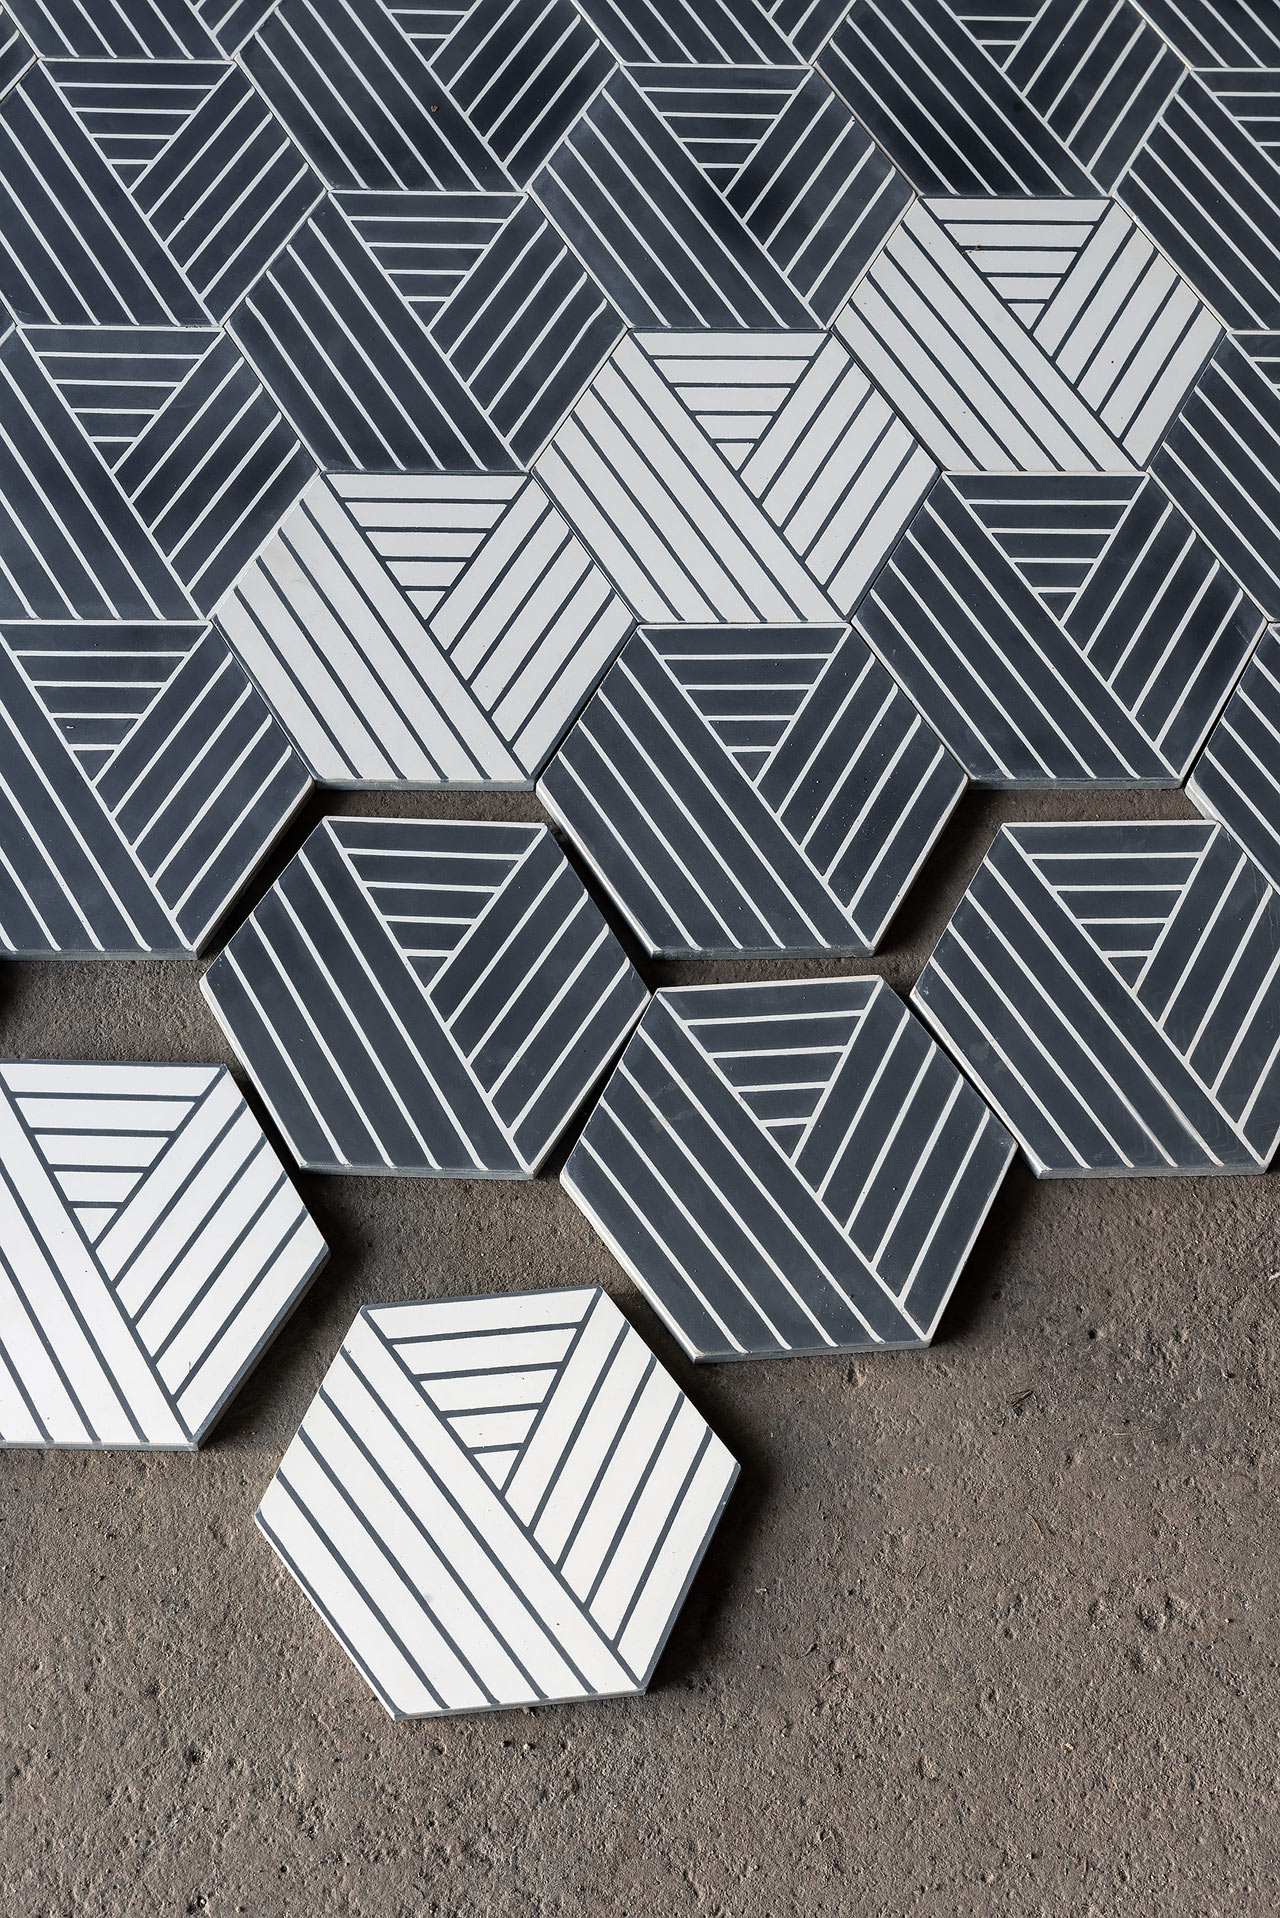 Marrakech Design Collaborates with Charlotte von der Lancken on Two Tile Collections